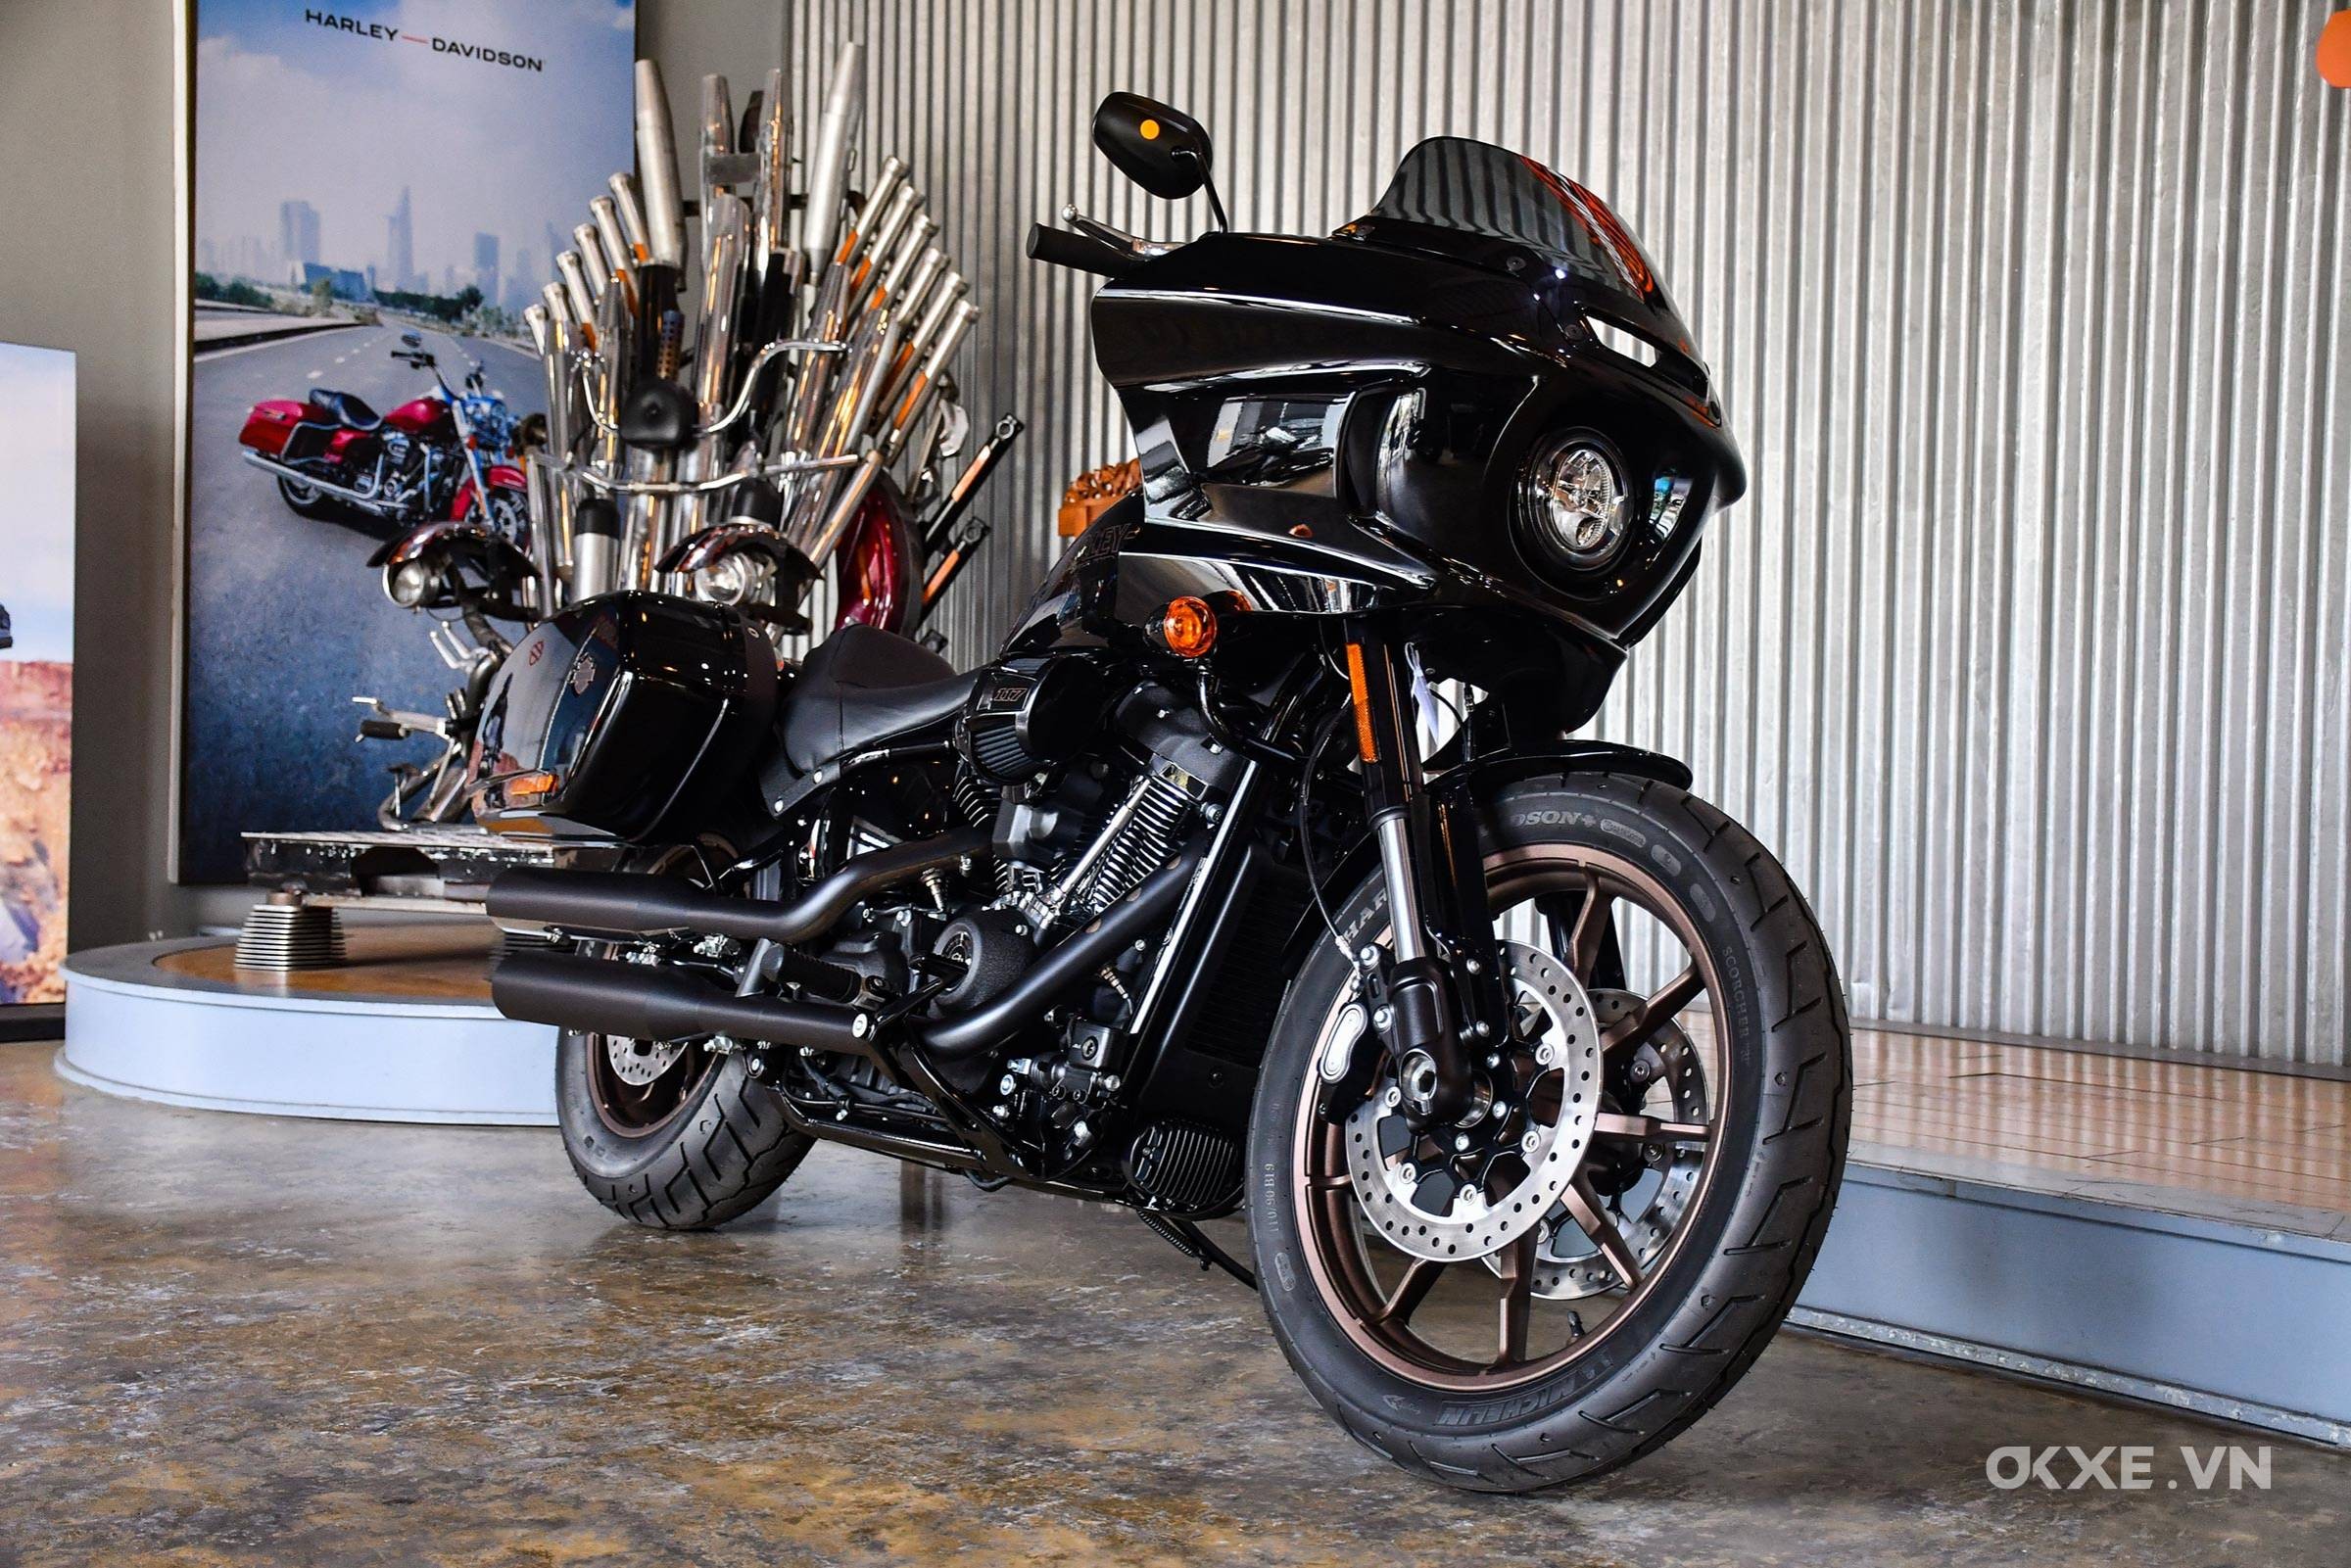 Môtô Harley Davidson giá rẻ nhất dành cho người Việt